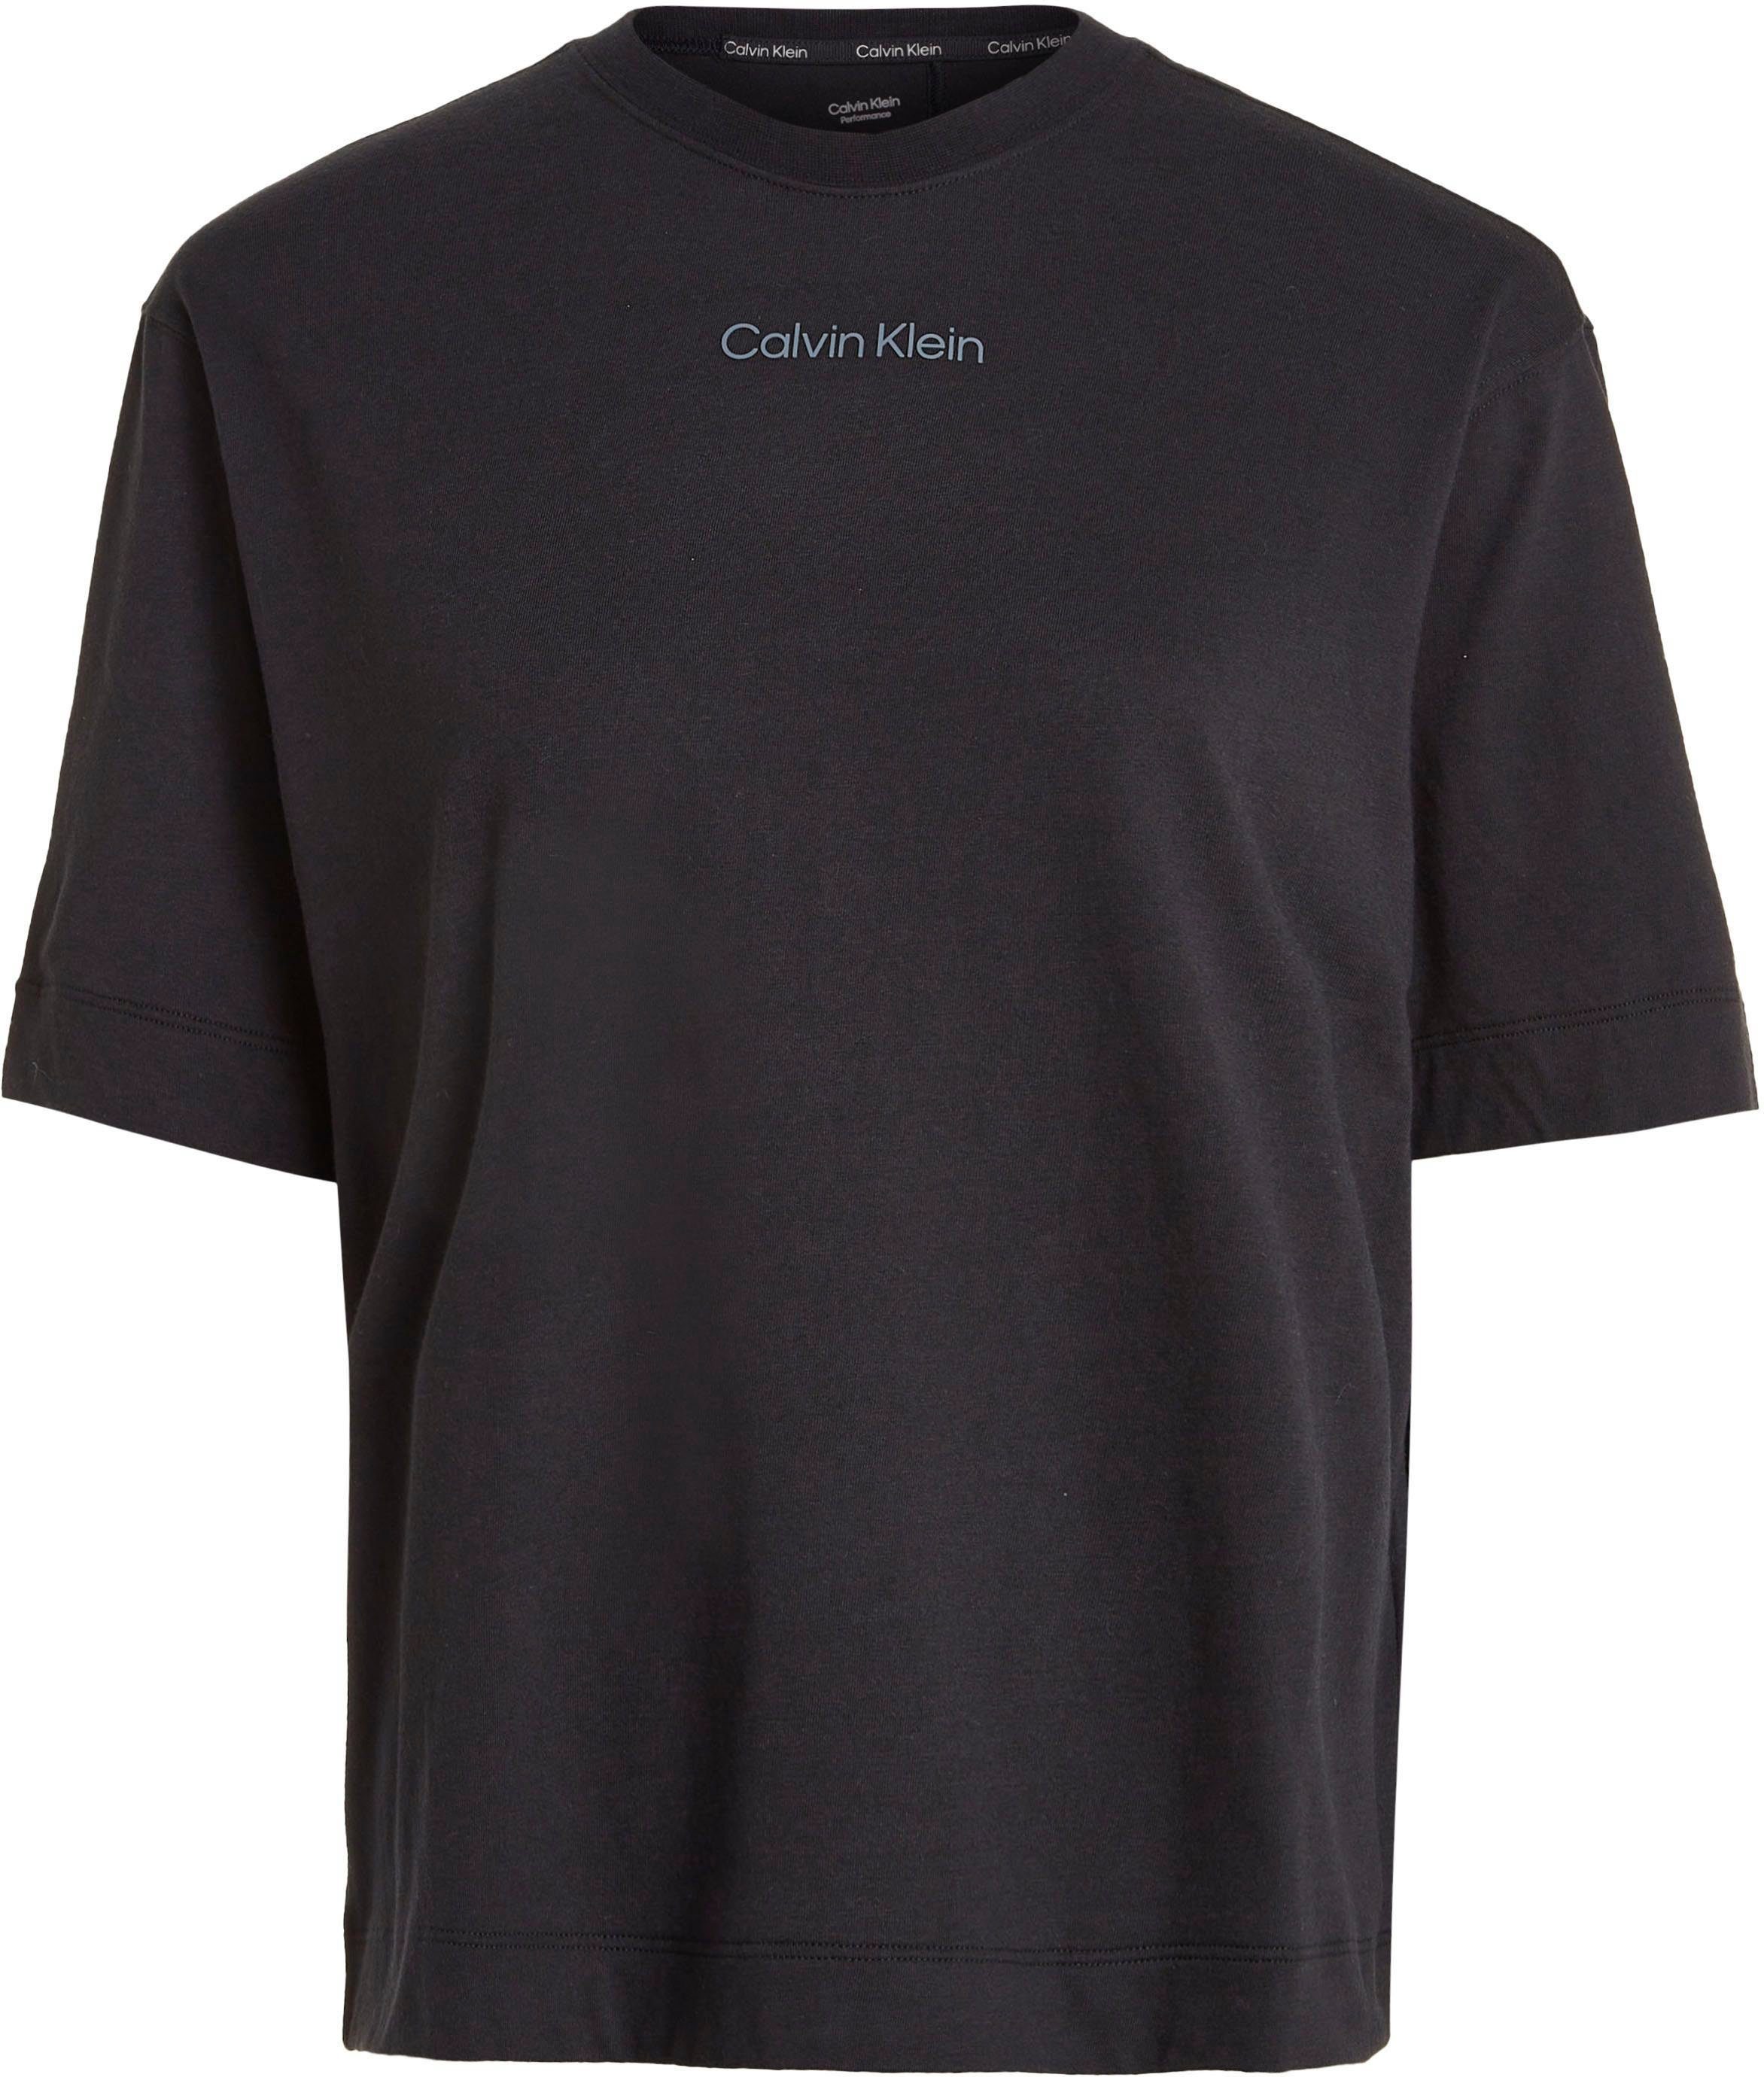 Calvin Klein Sport T-Shirt schwarz